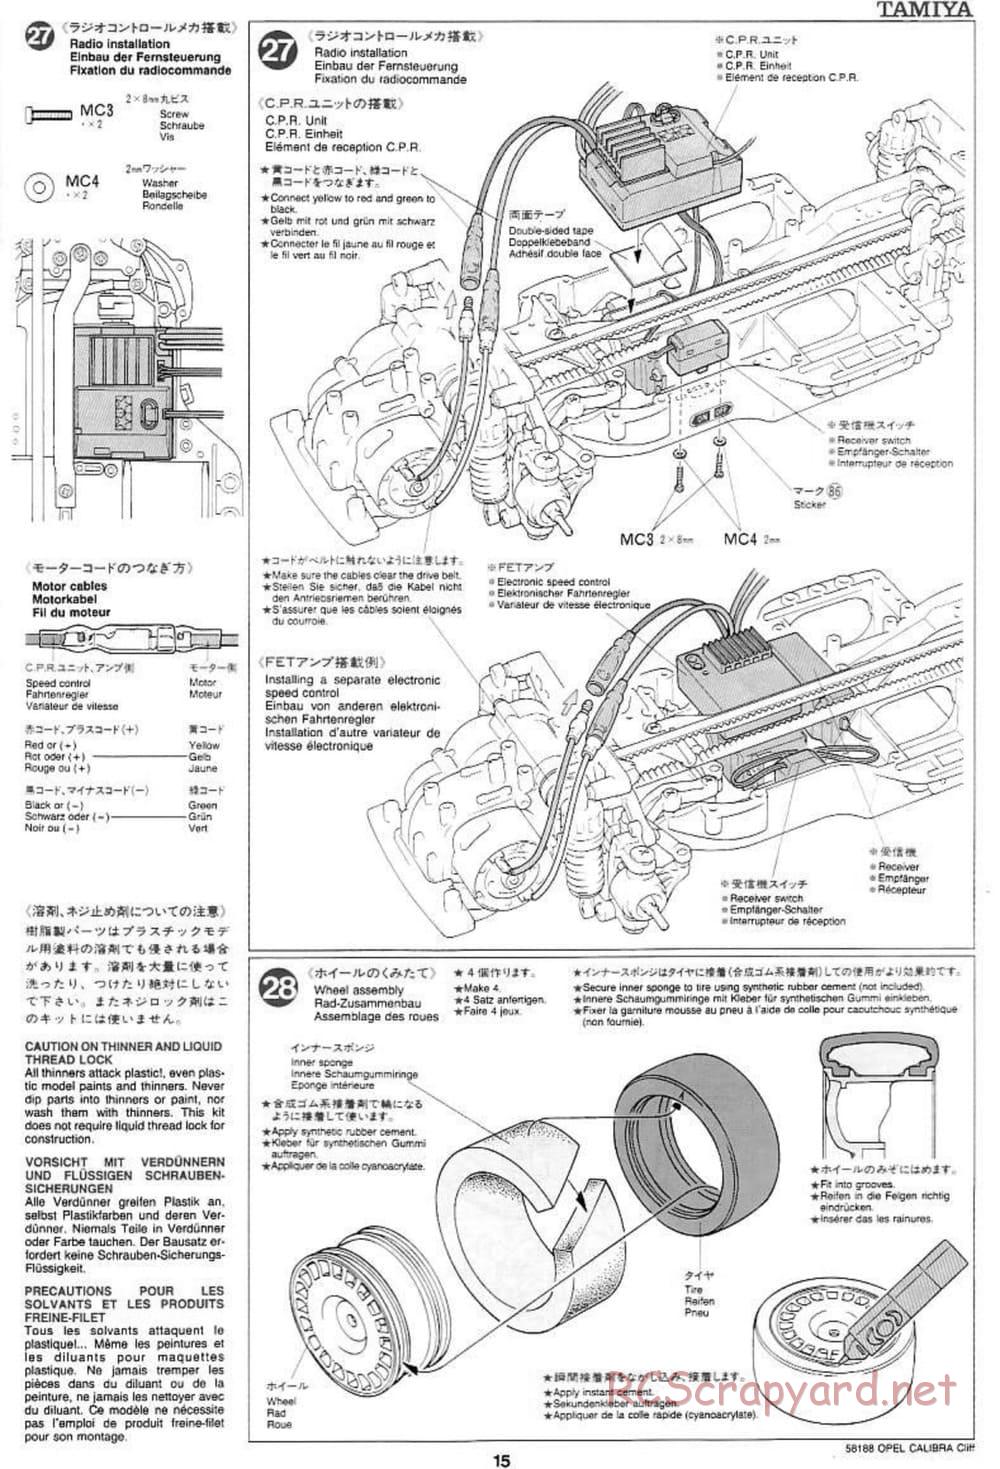 Tamiya - Opel Calibra Cliff - TA-03F Chassis - Manual - Page 15